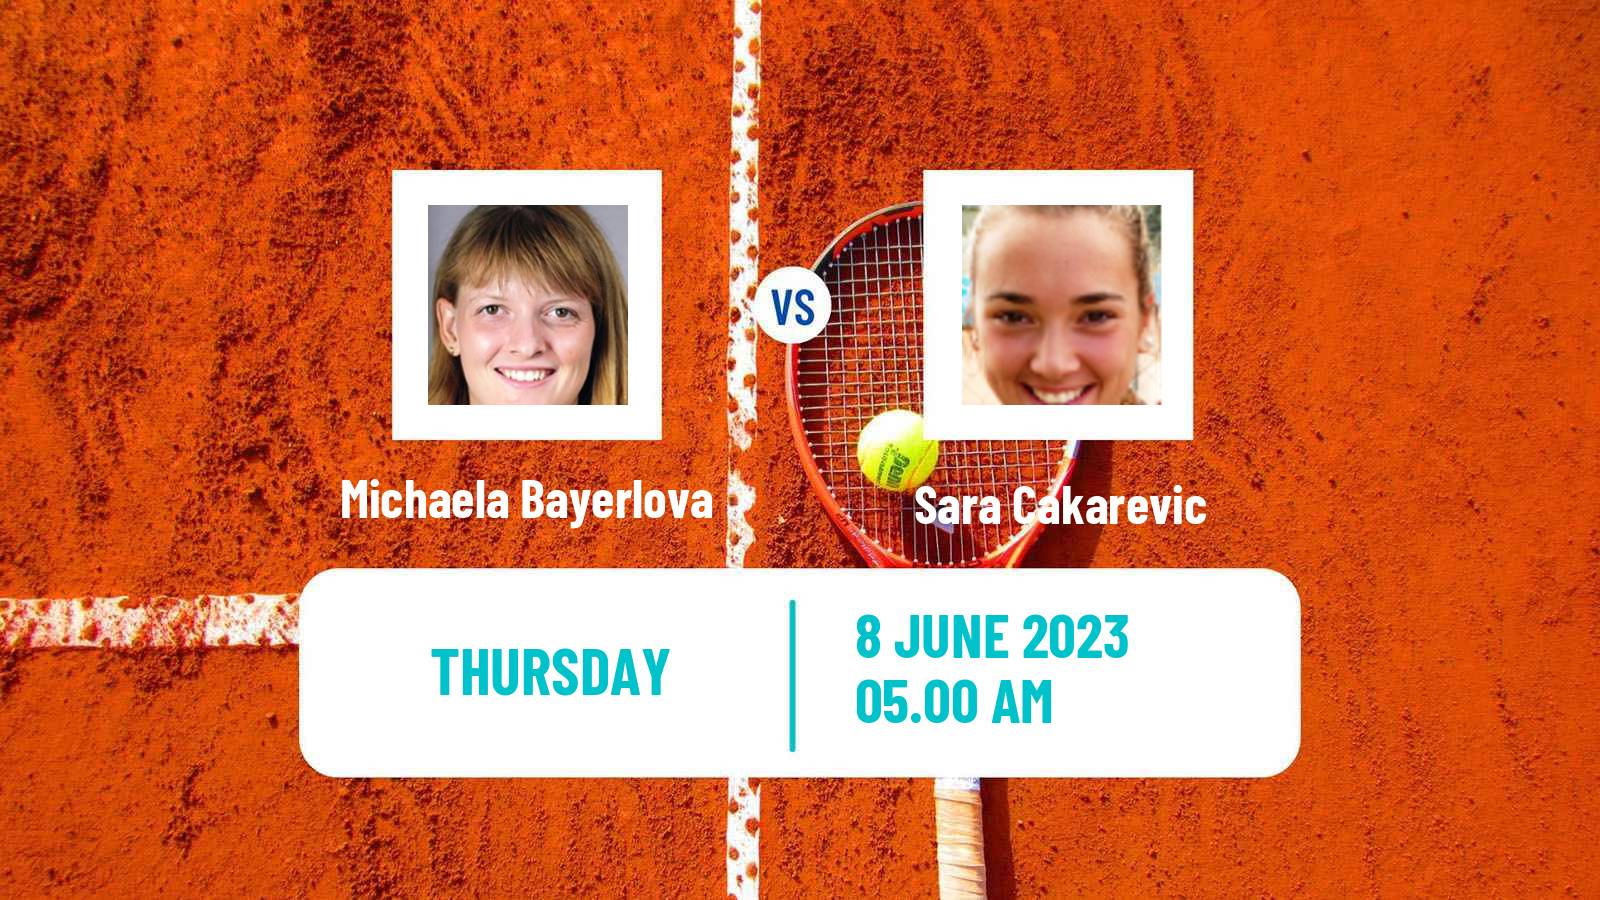 Tennis ITF W25 Kursumlijska Banja 2 Women Michaela Bayerlova - Sara Cakarevic